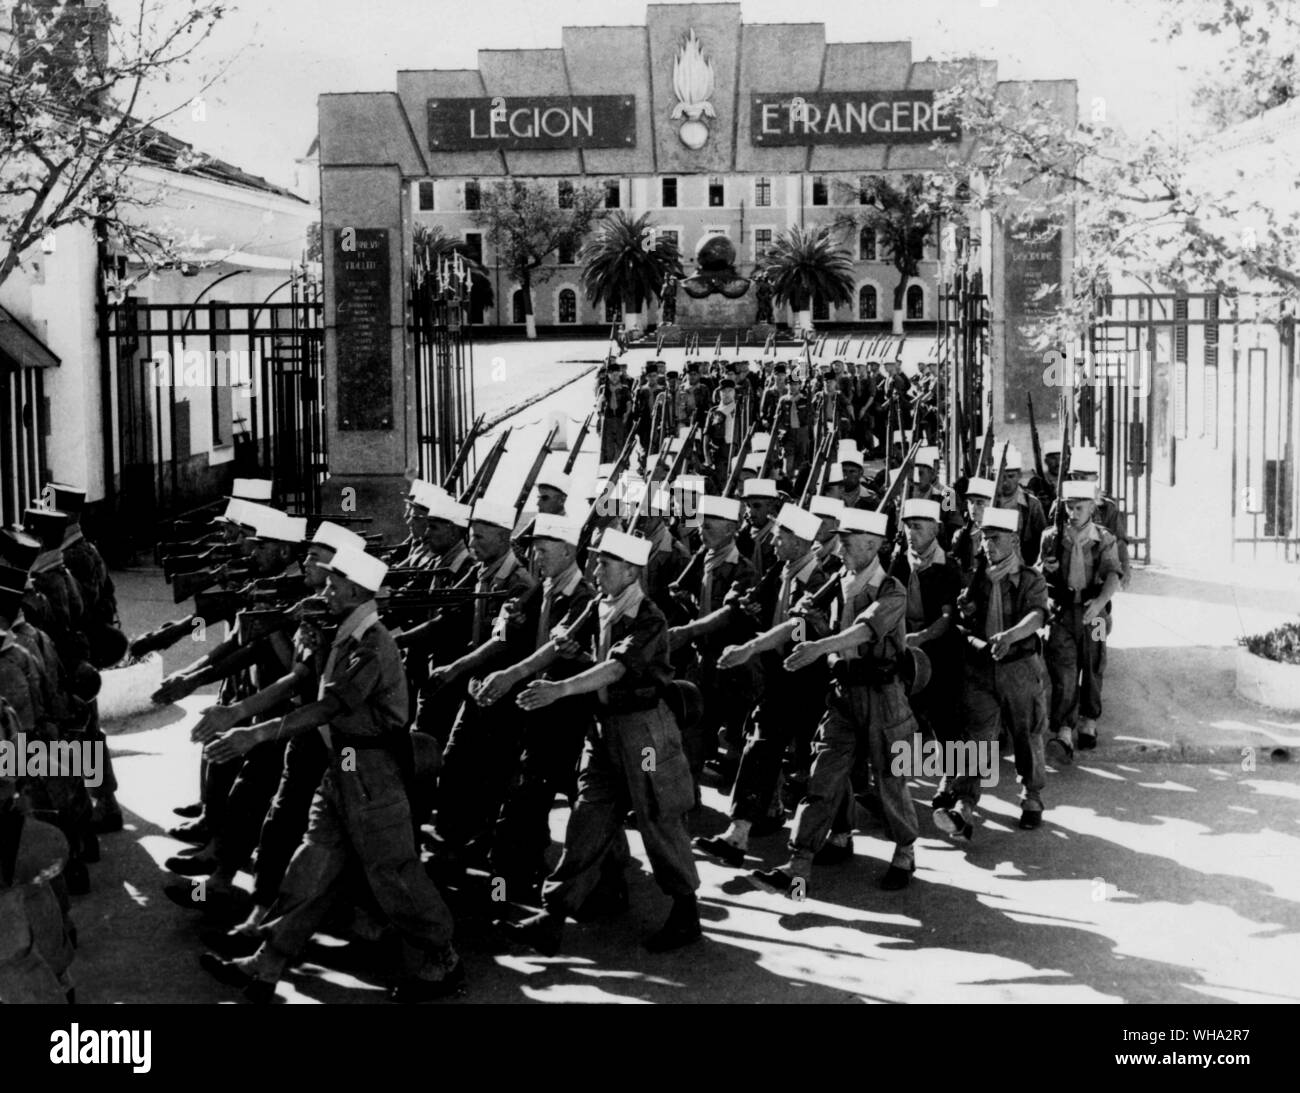 Feb 1960 20: eine Abteilung der Französischen Fremdenlegion Märsche aus dem HQ Ausbildung Kaserne in Sidi-Bel-Abbes, Algerien für eine Parade in der Stadt. Stockfoto